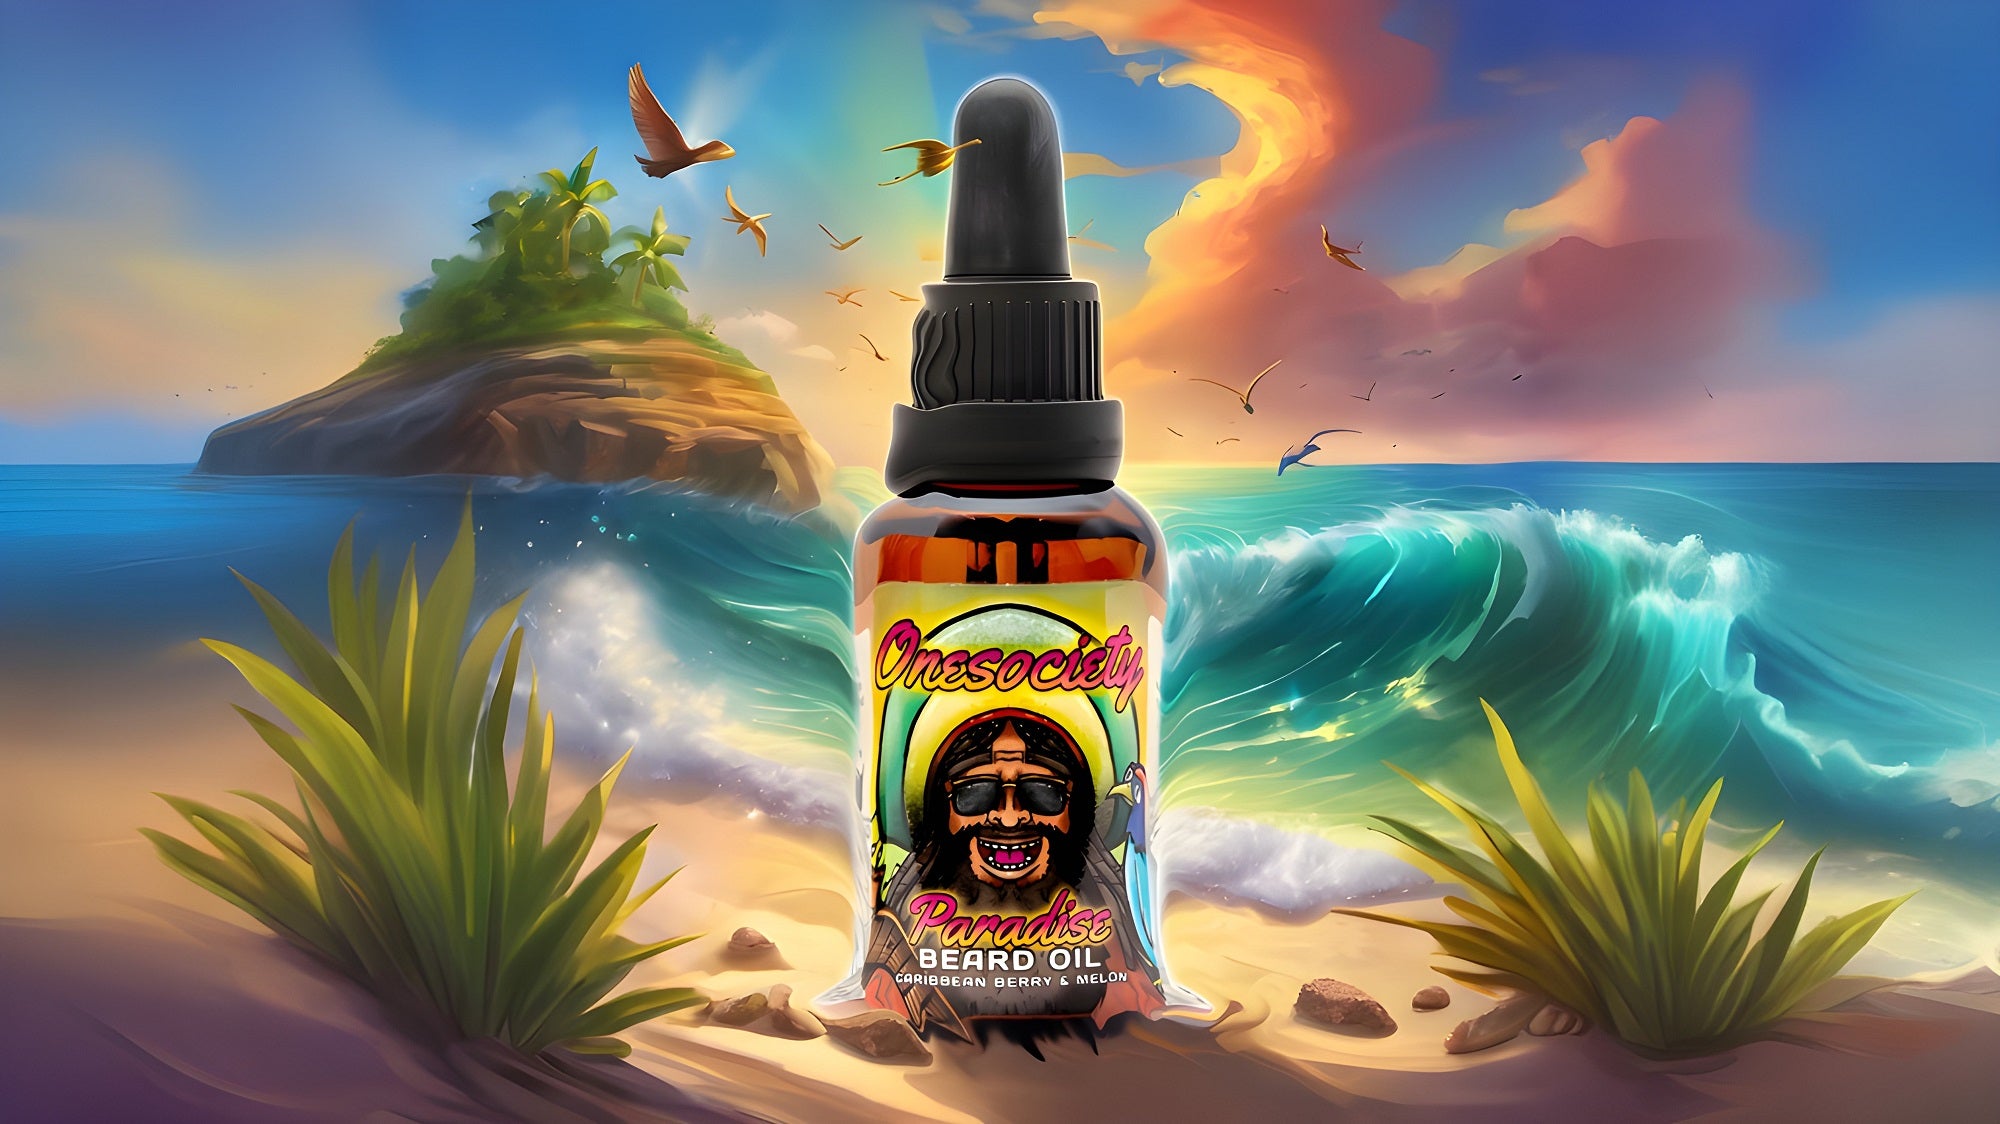 Paradise Beard Oil sitting on a beach in the summer